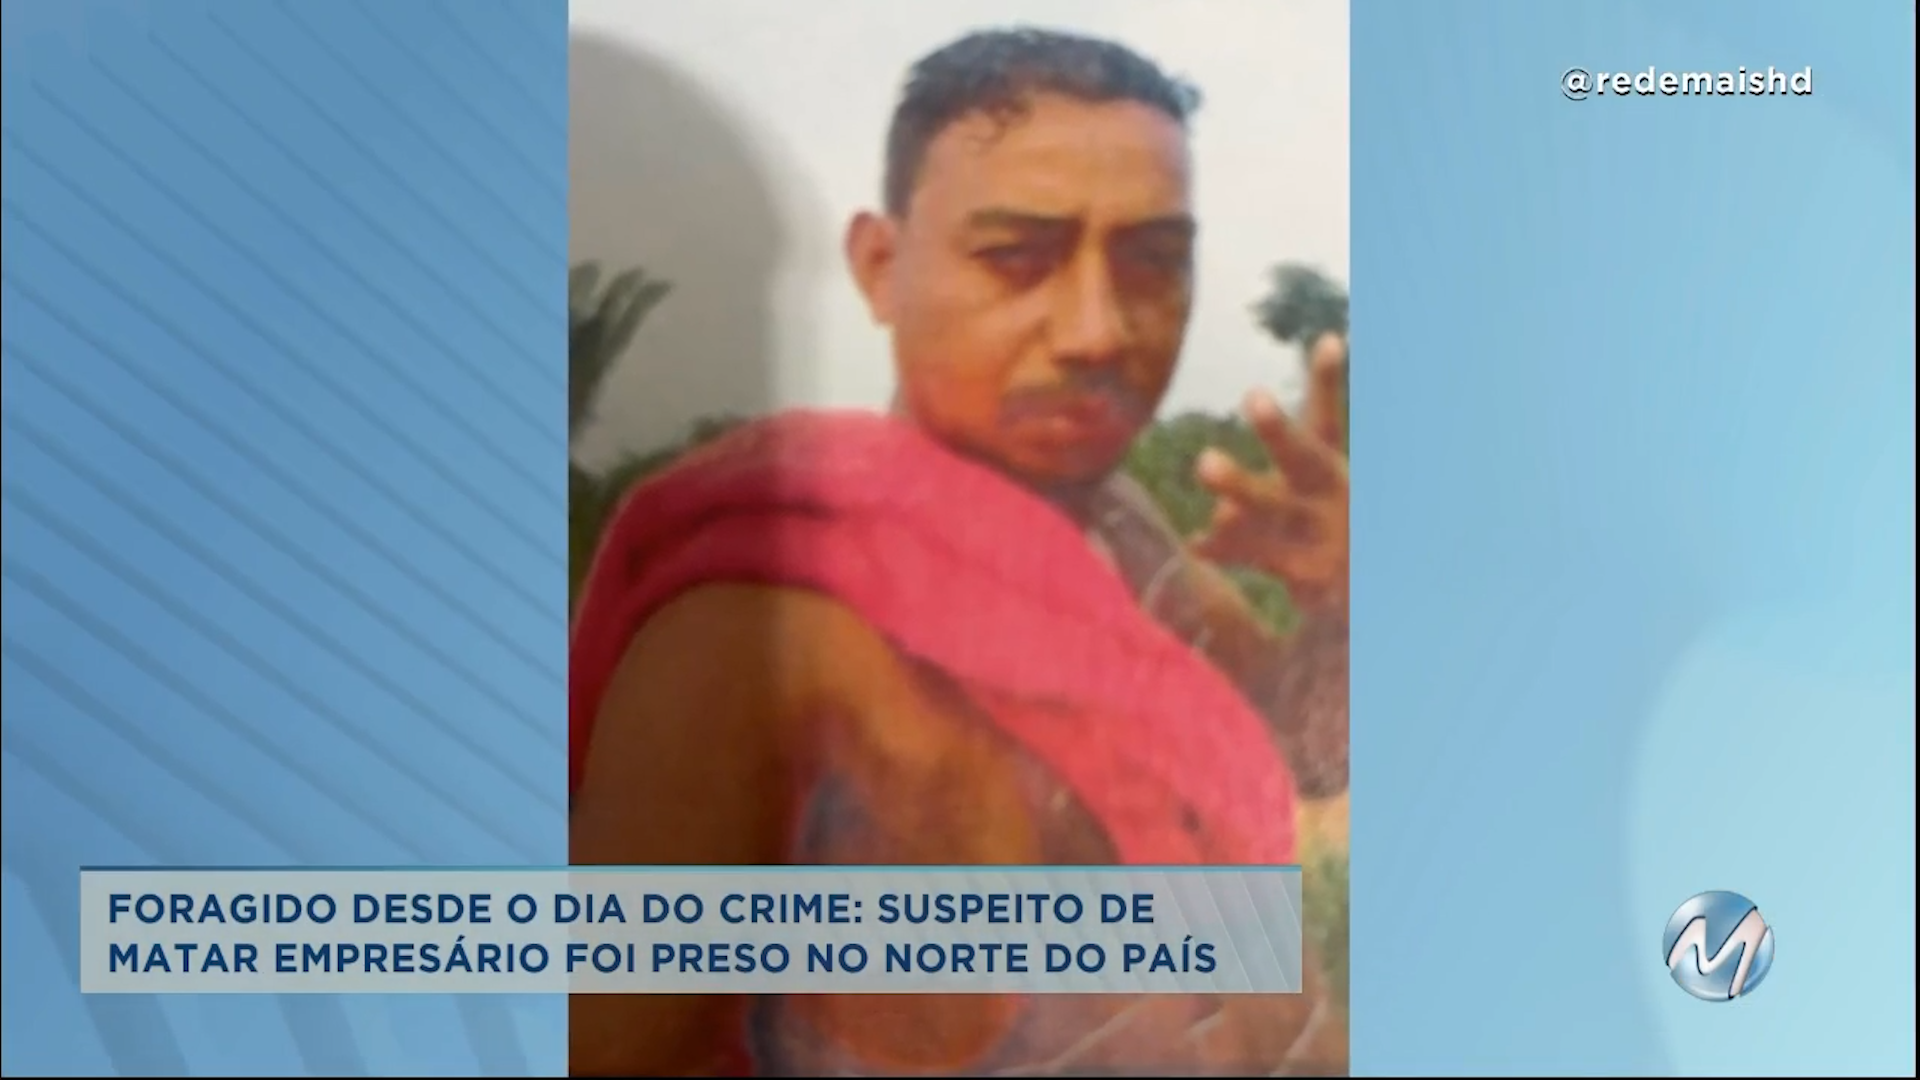 Caso Giongo: preso no Pará suspeito de matar empresário em Varginha